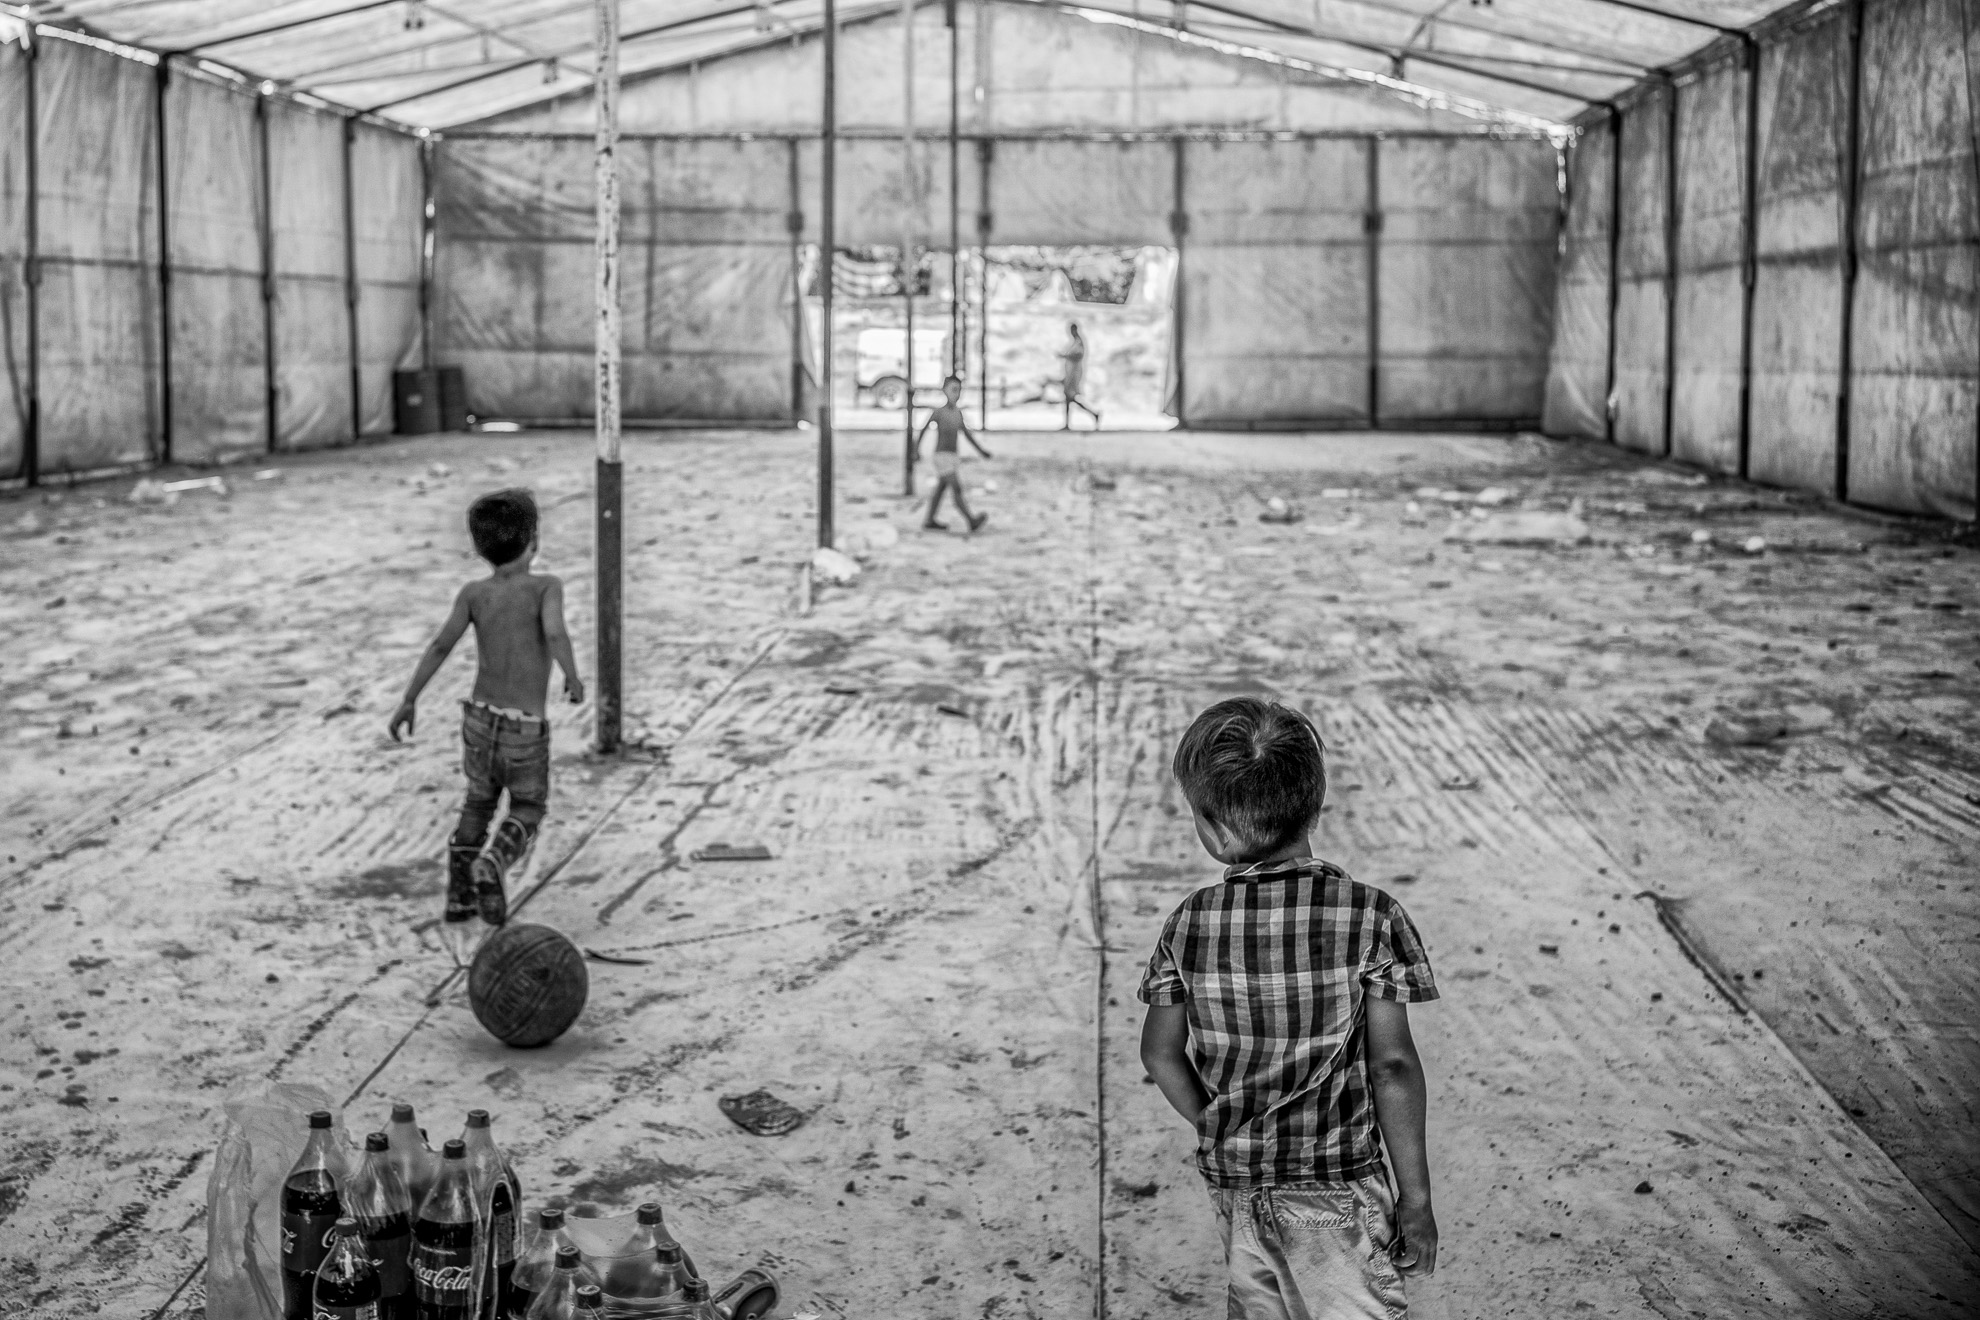 Niños salvadoreños juegan dentro de una tienda de campaña que servía de comedor colectivo en el campamento de solicitantes de asilo en Matamoros, México.